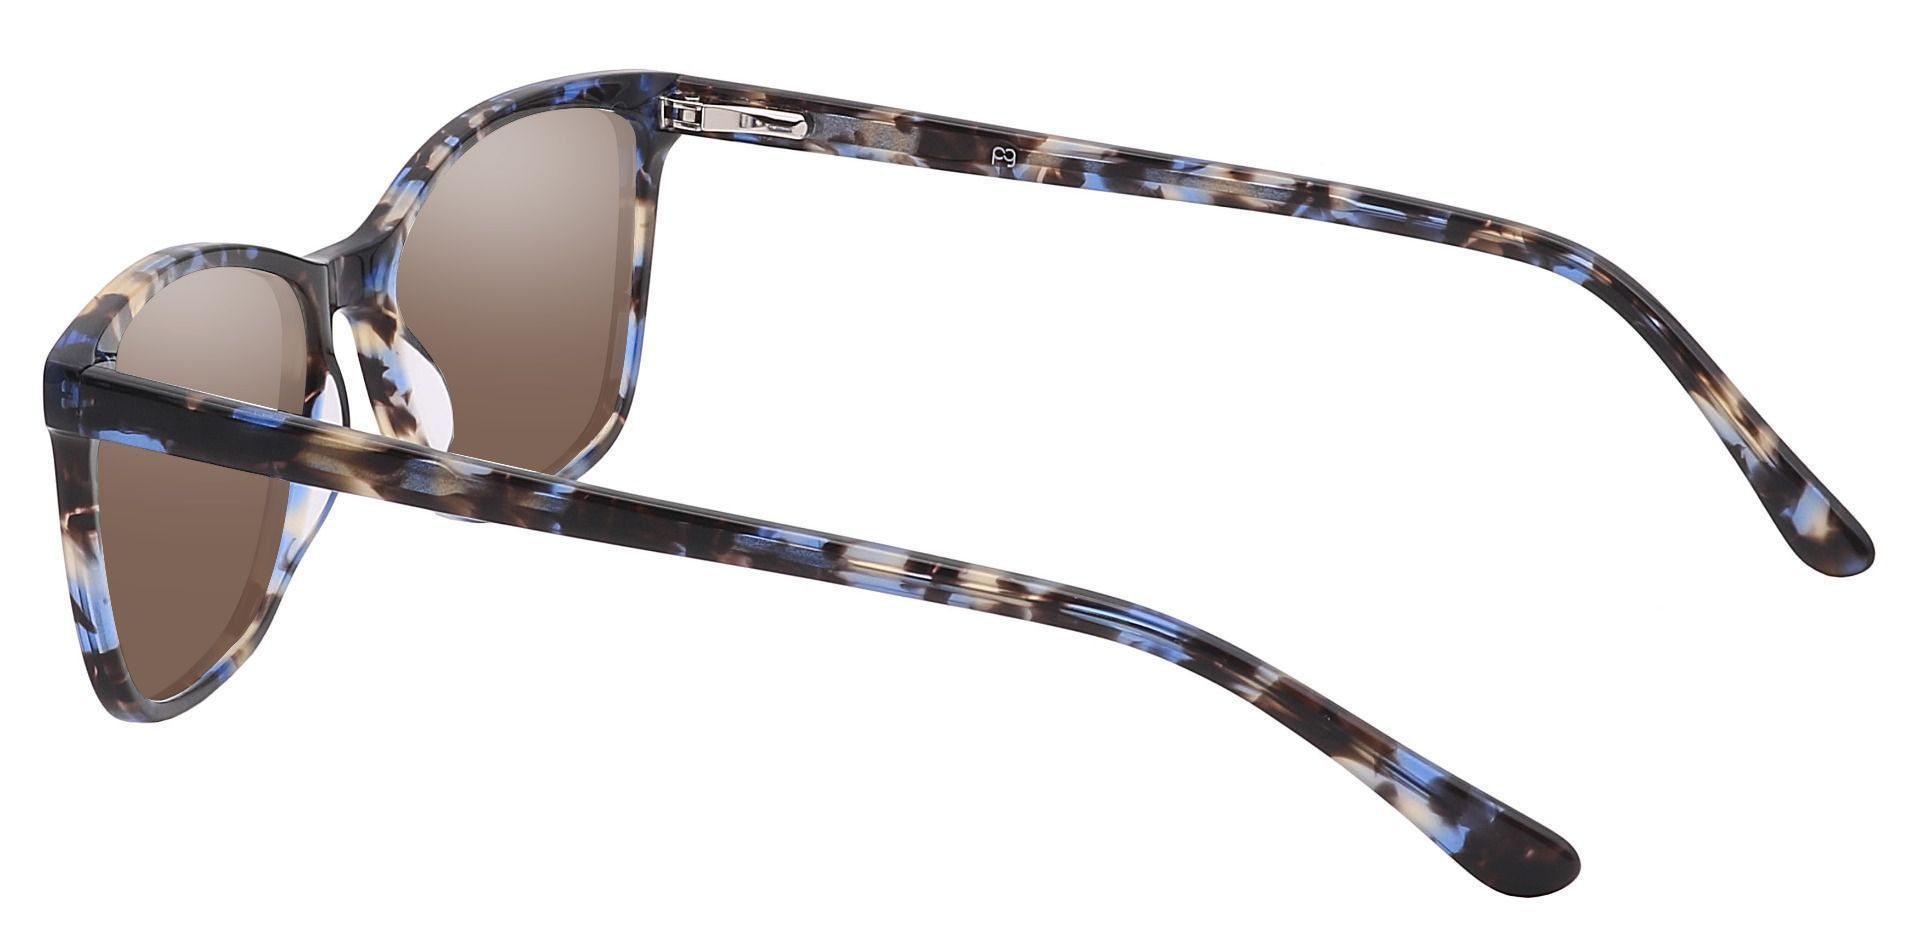 Antonia Square Prescription Sunglasses - Multi Color Frame With Brown Lenses